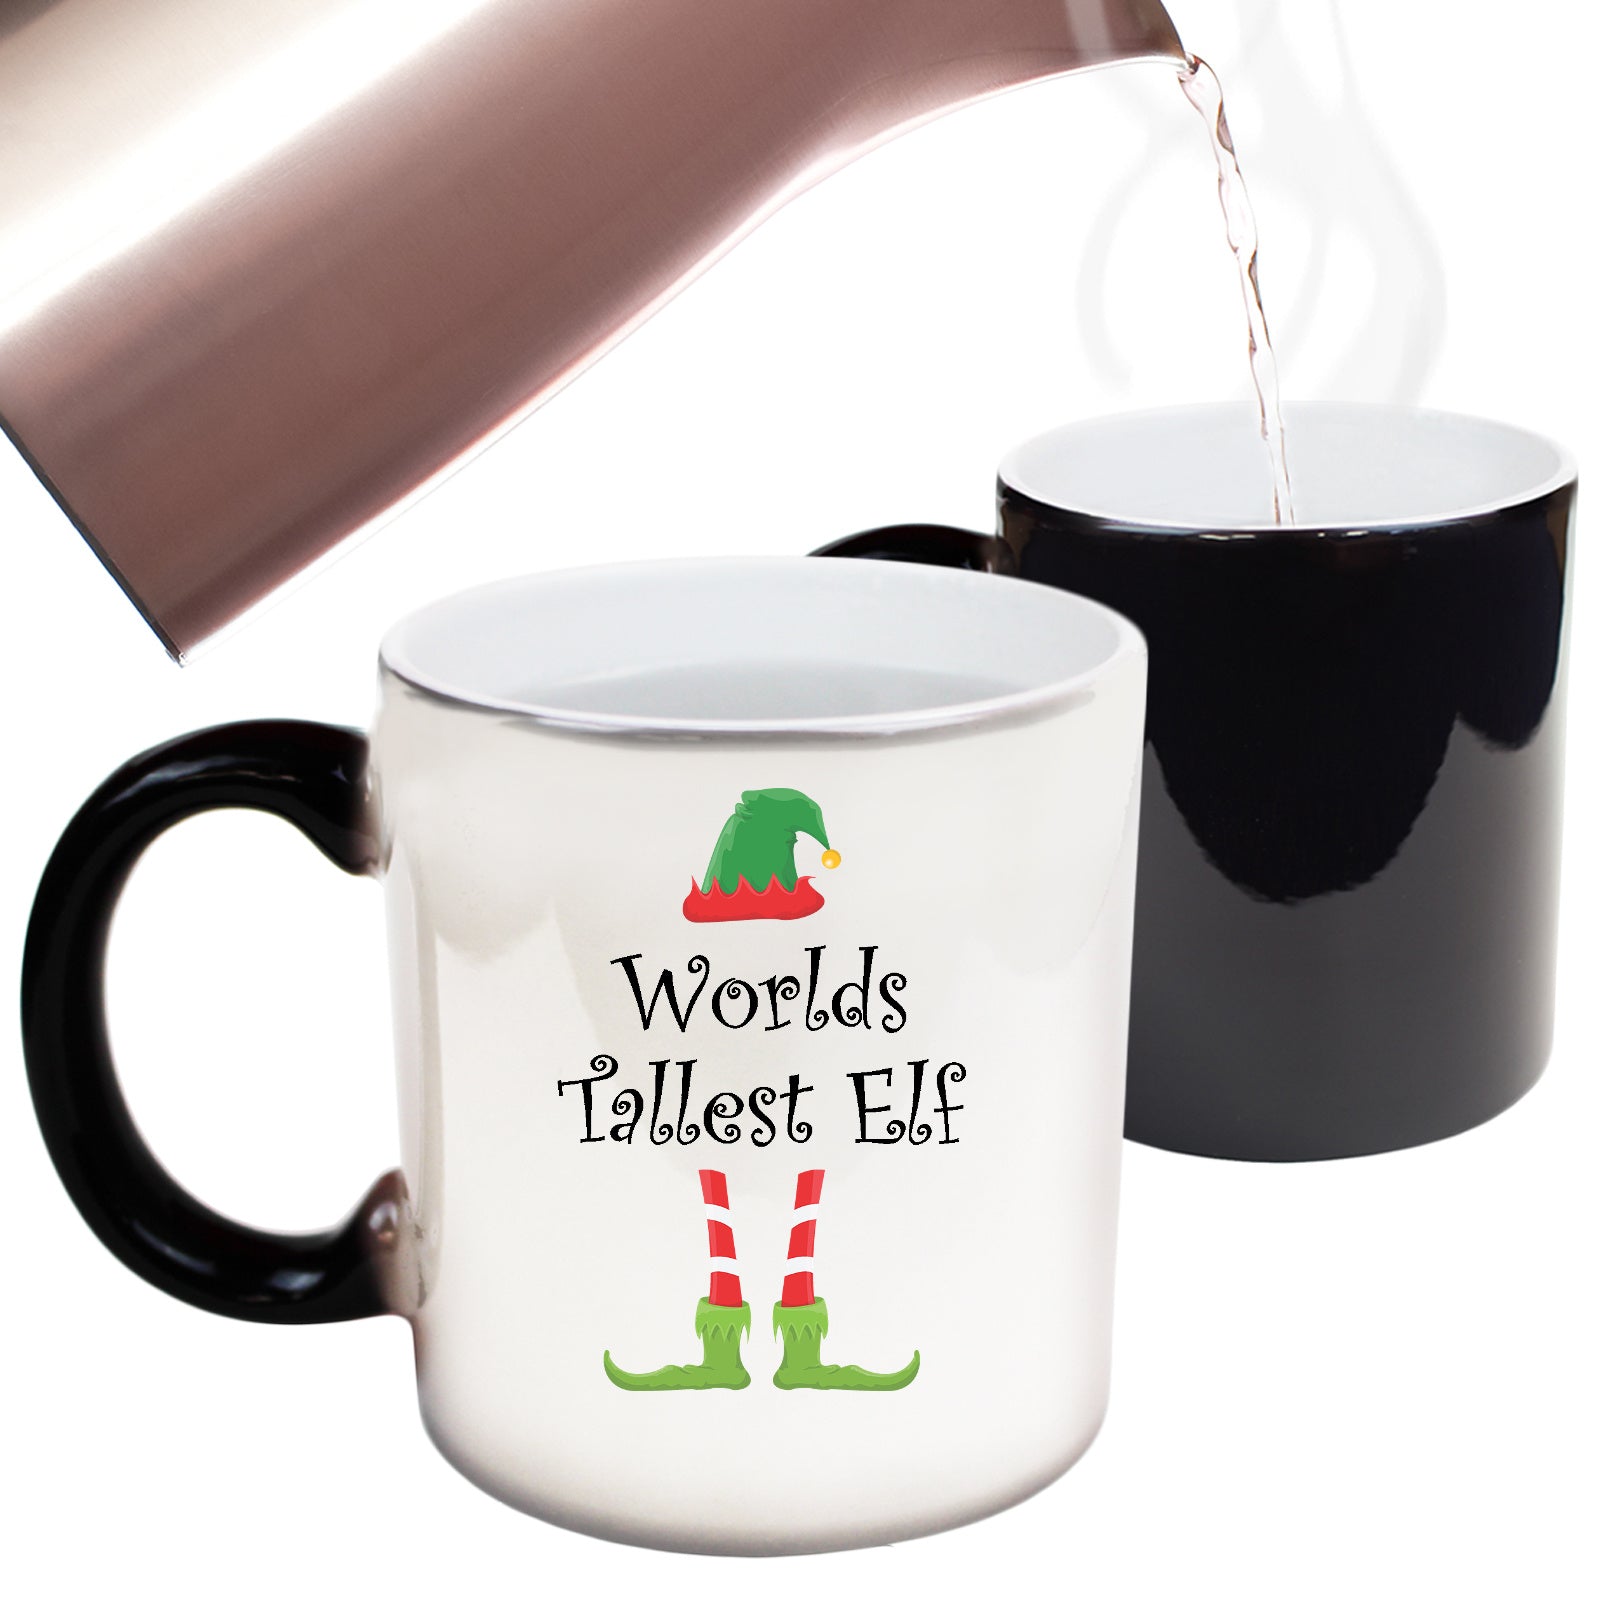 The Christmas Hub - Christmas Worlds Tallest Elf - Funny Colour Changing Mug